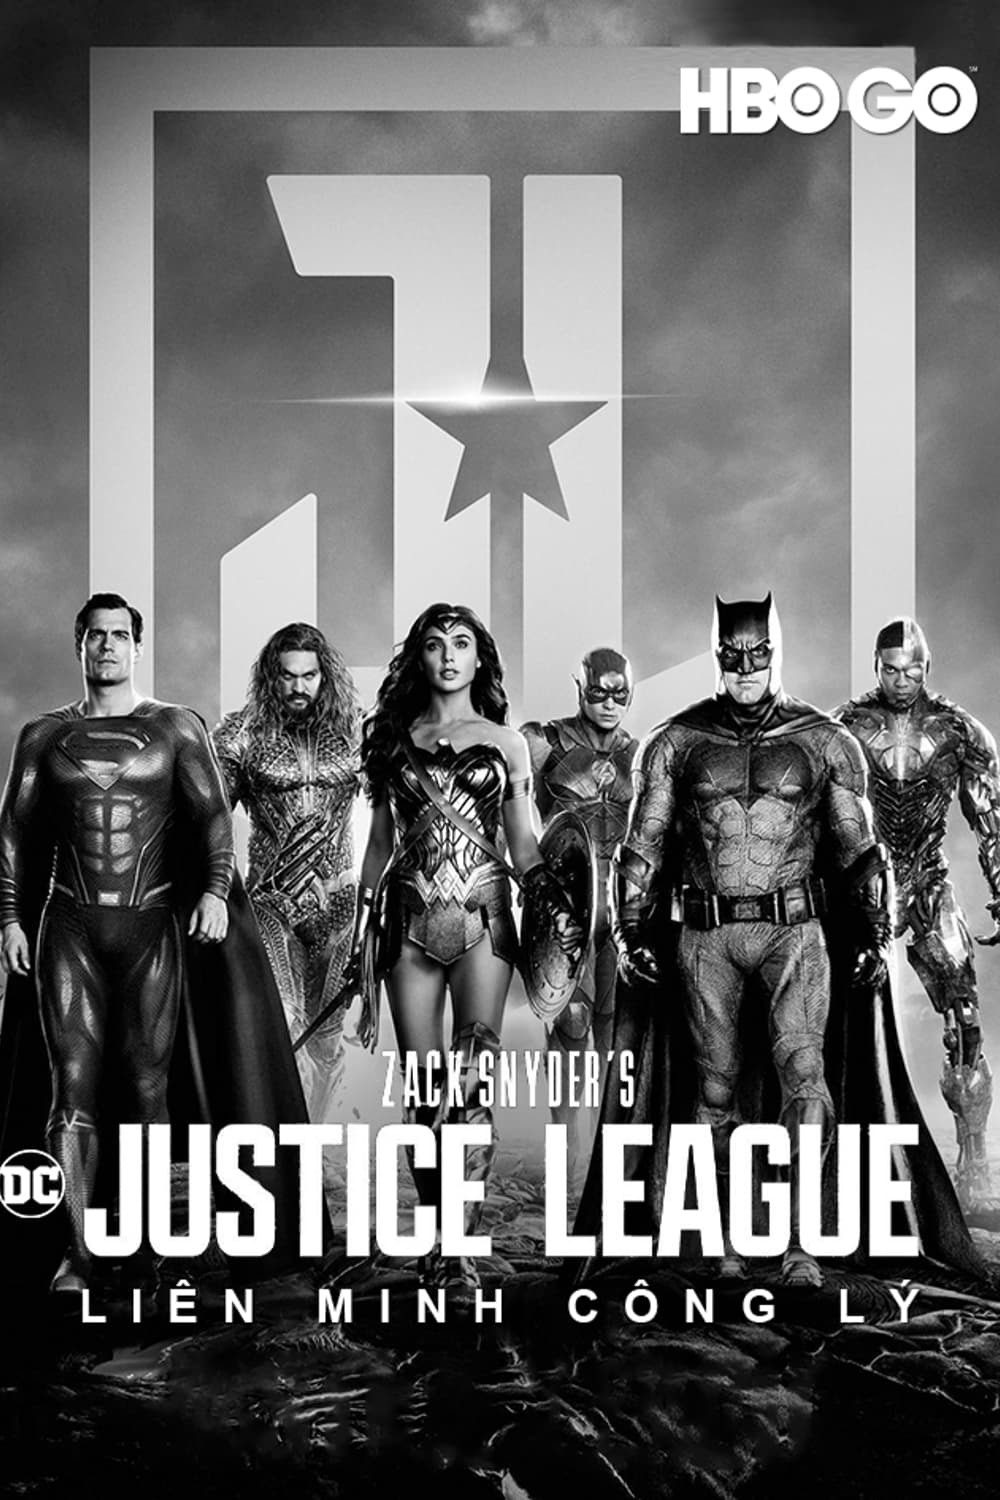 Liên Minh Công Lý của Zack Snyder (Zack Snyder's Justice League) [2021]